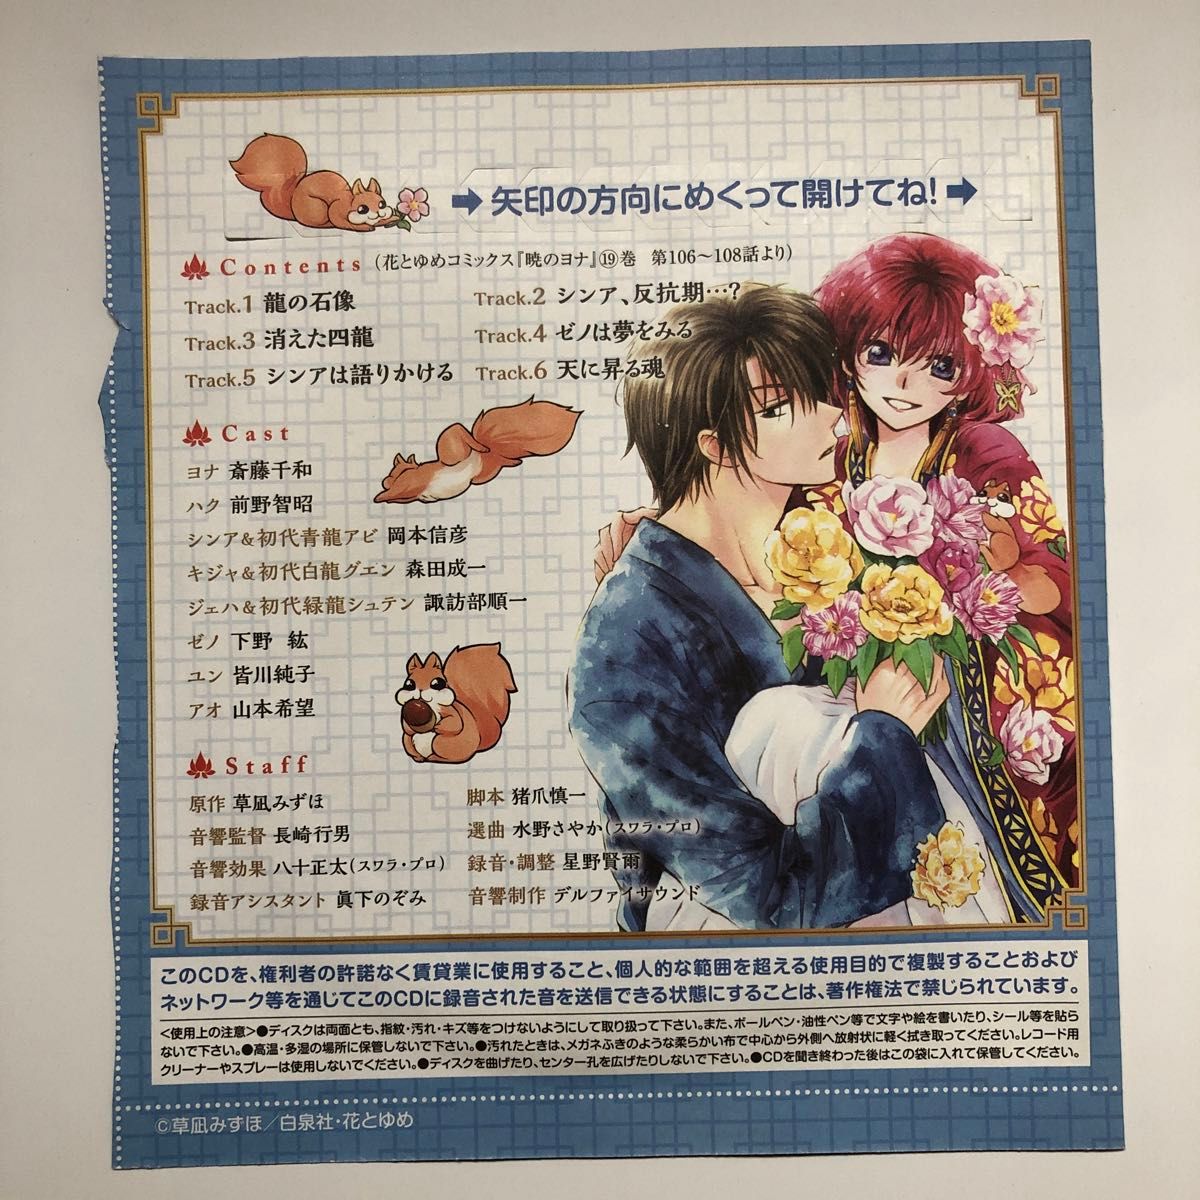 暁のヨナ 3号連続ふろくドラマCD第3弾 2015花とゆめ20号ふろく